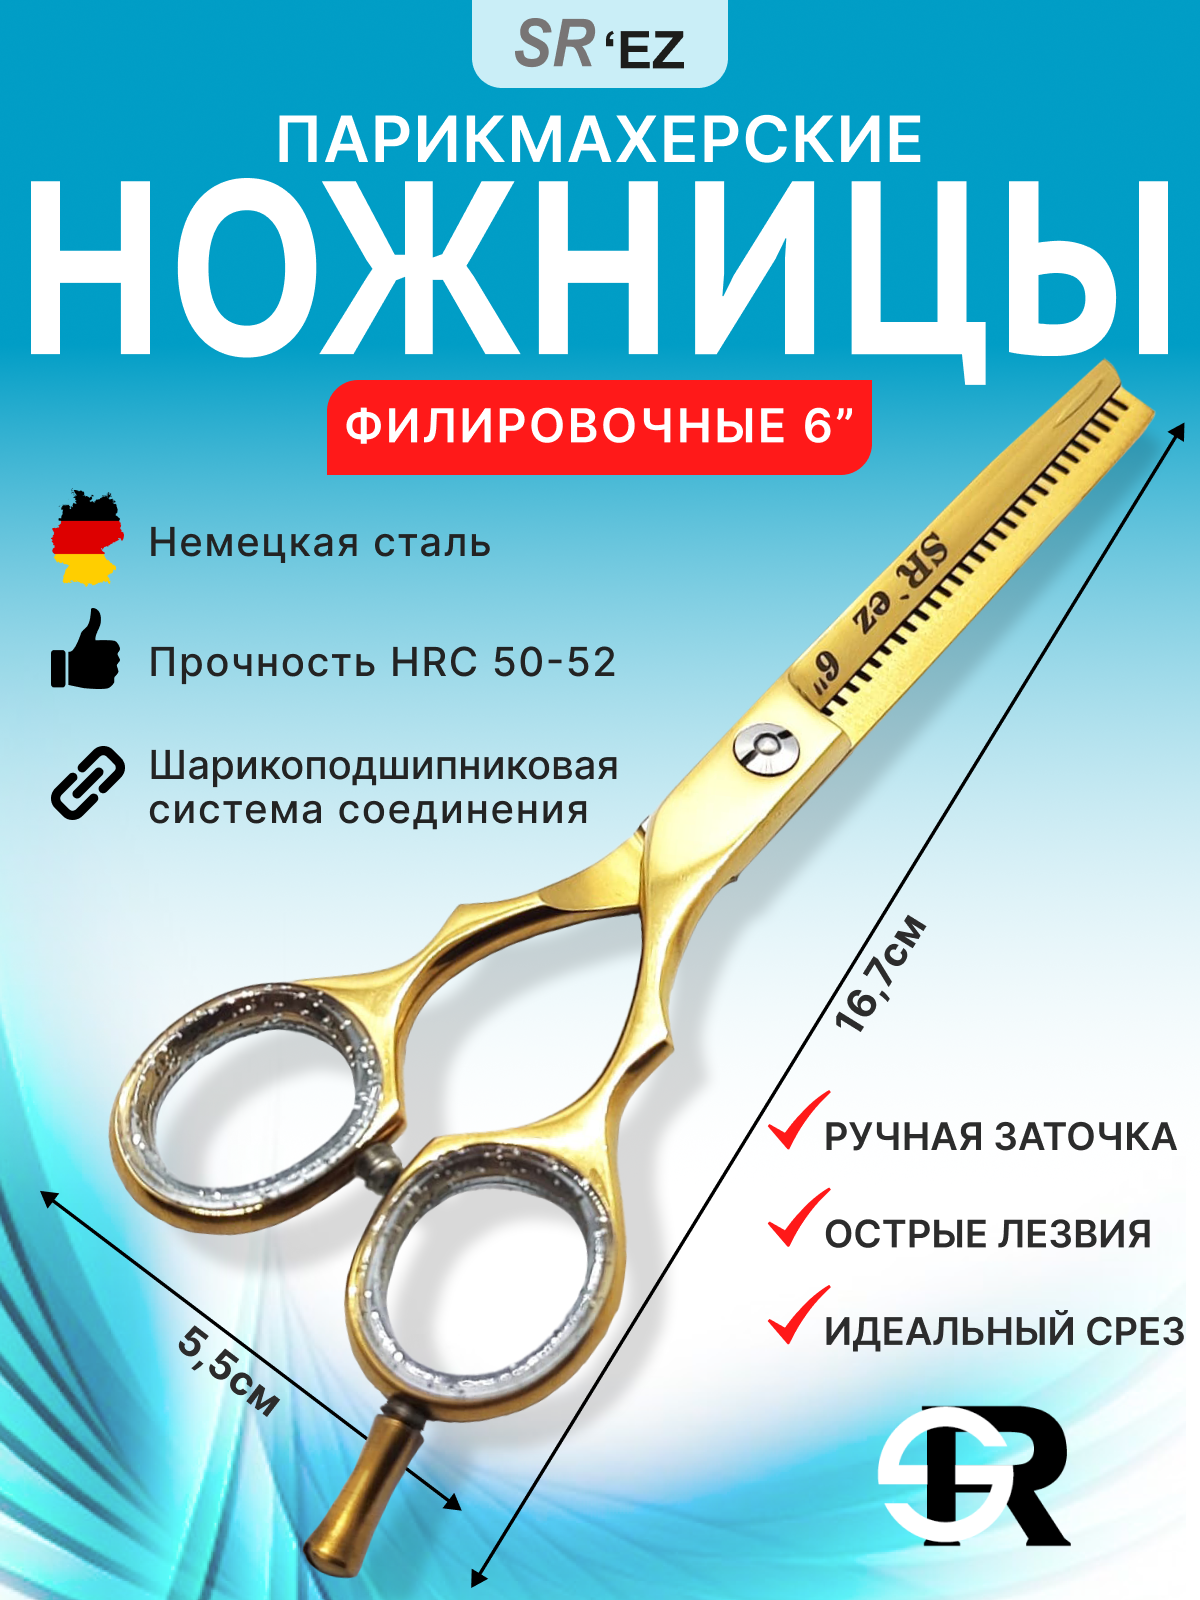 Ножницы парикмахерские филировочные 6.0" для стрижки волос профессиональные SRez, золотые